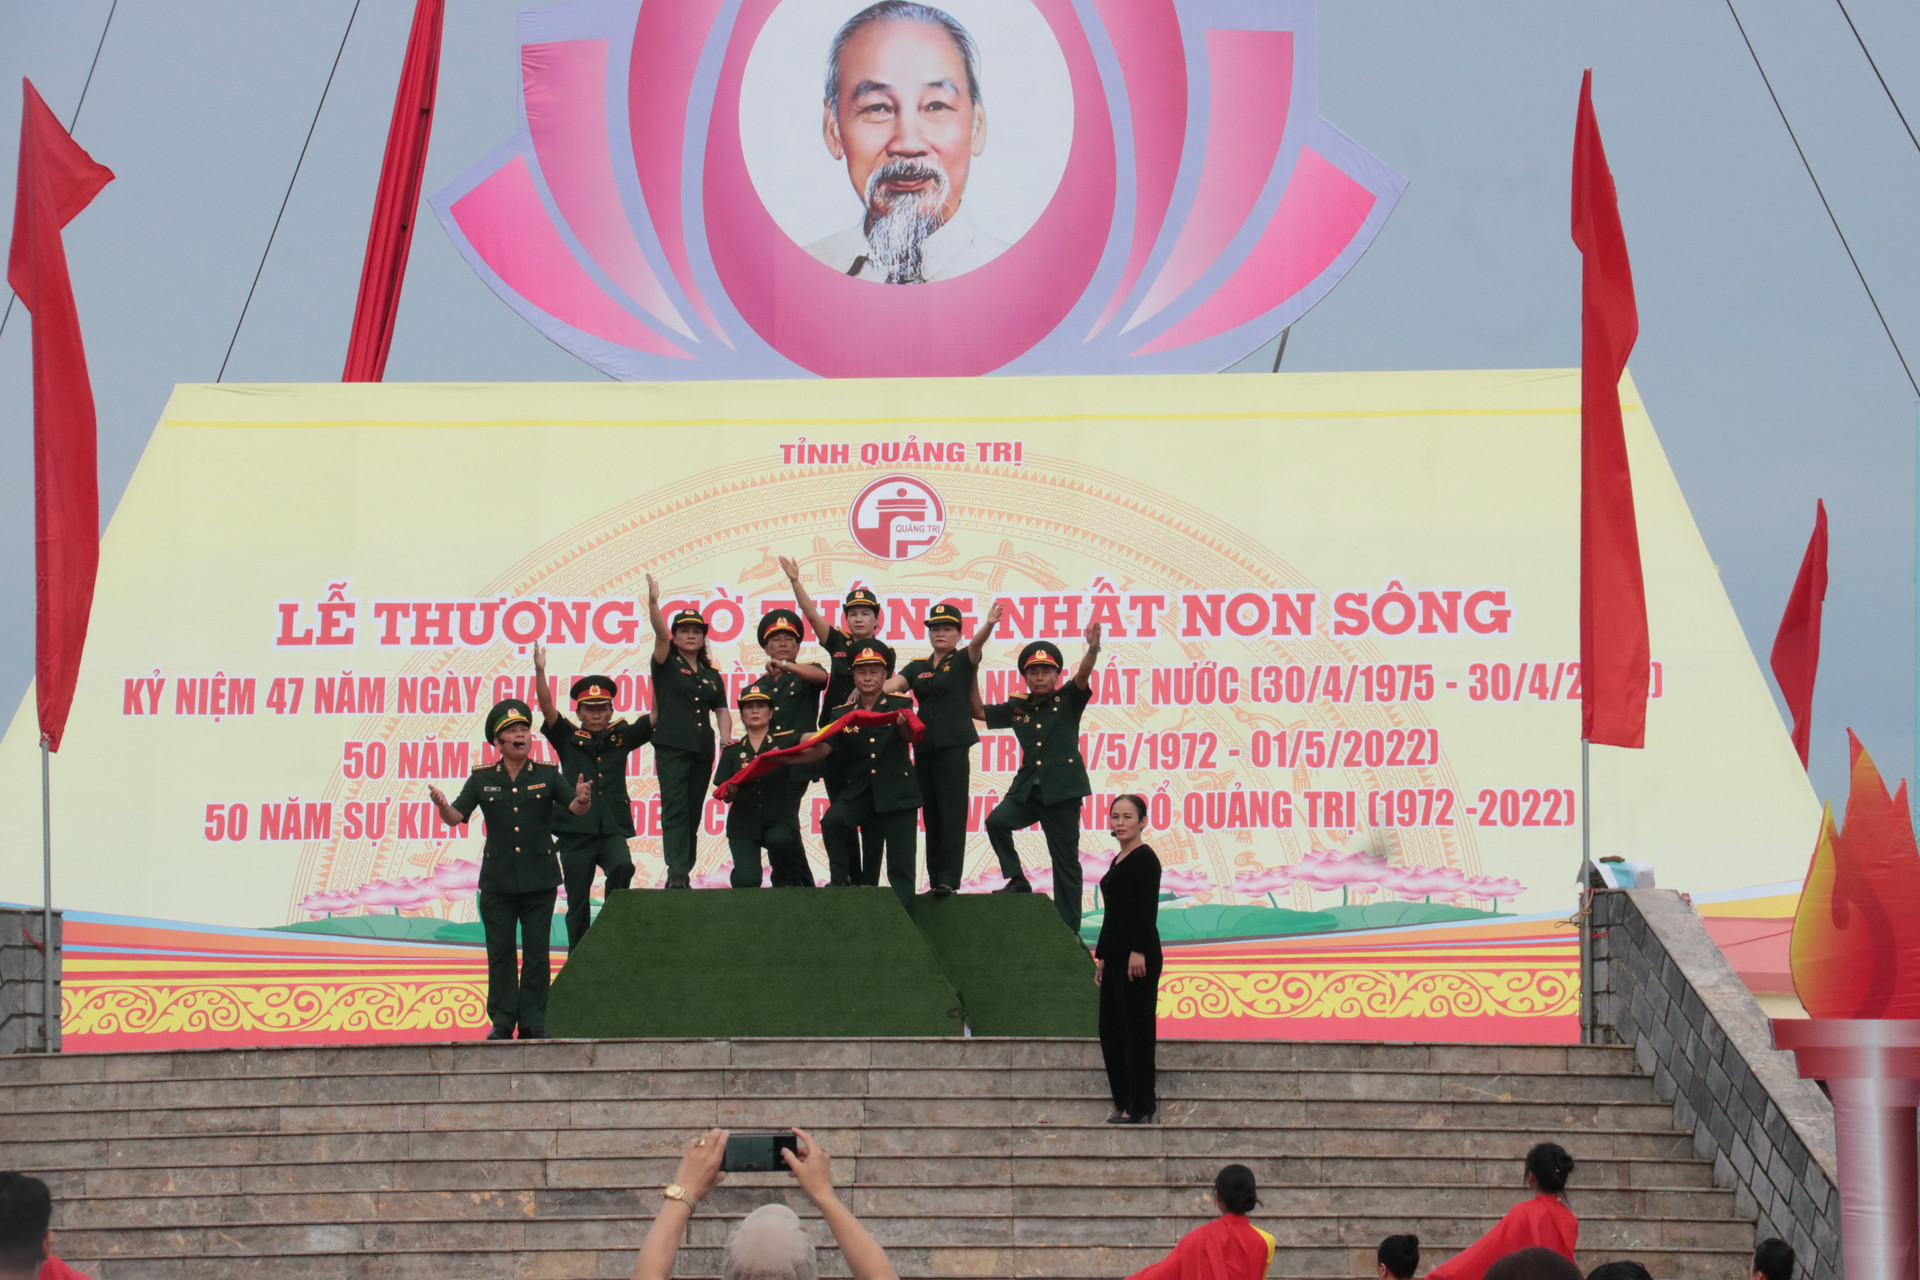 Lễ Thượng cờ “Thống nhất non sông” và diễu binh, diễu hành được tổ chức tại Di tích Quốc gia đặc biệt Đôi bờ Hiền Lương - Bến Hải.